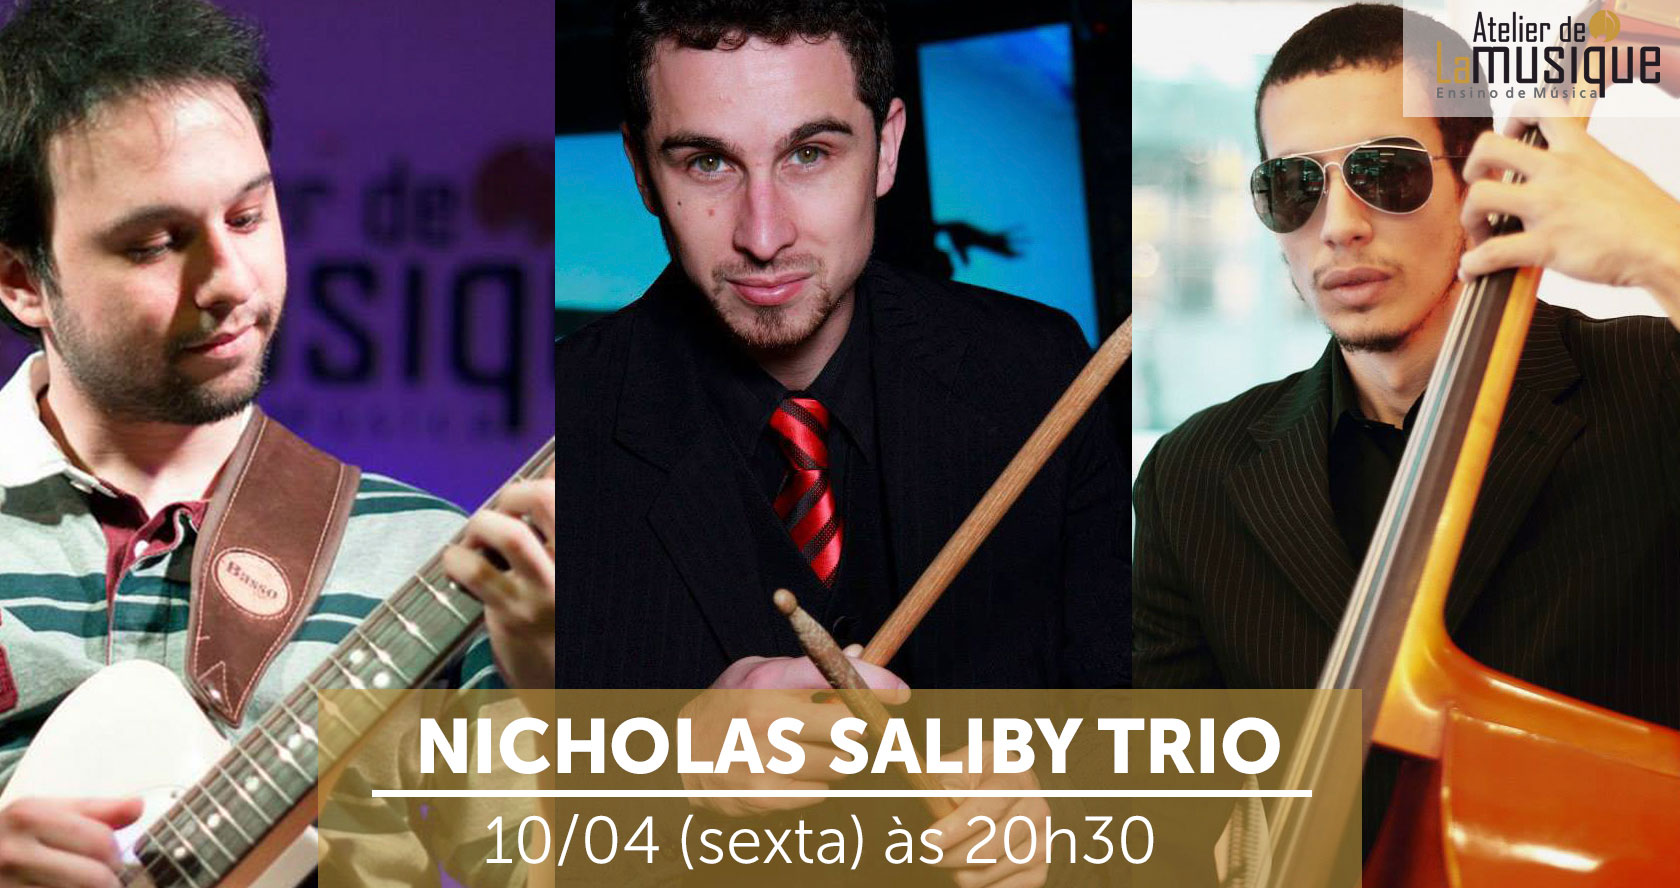 Nicholas Saliby Trio e convidados